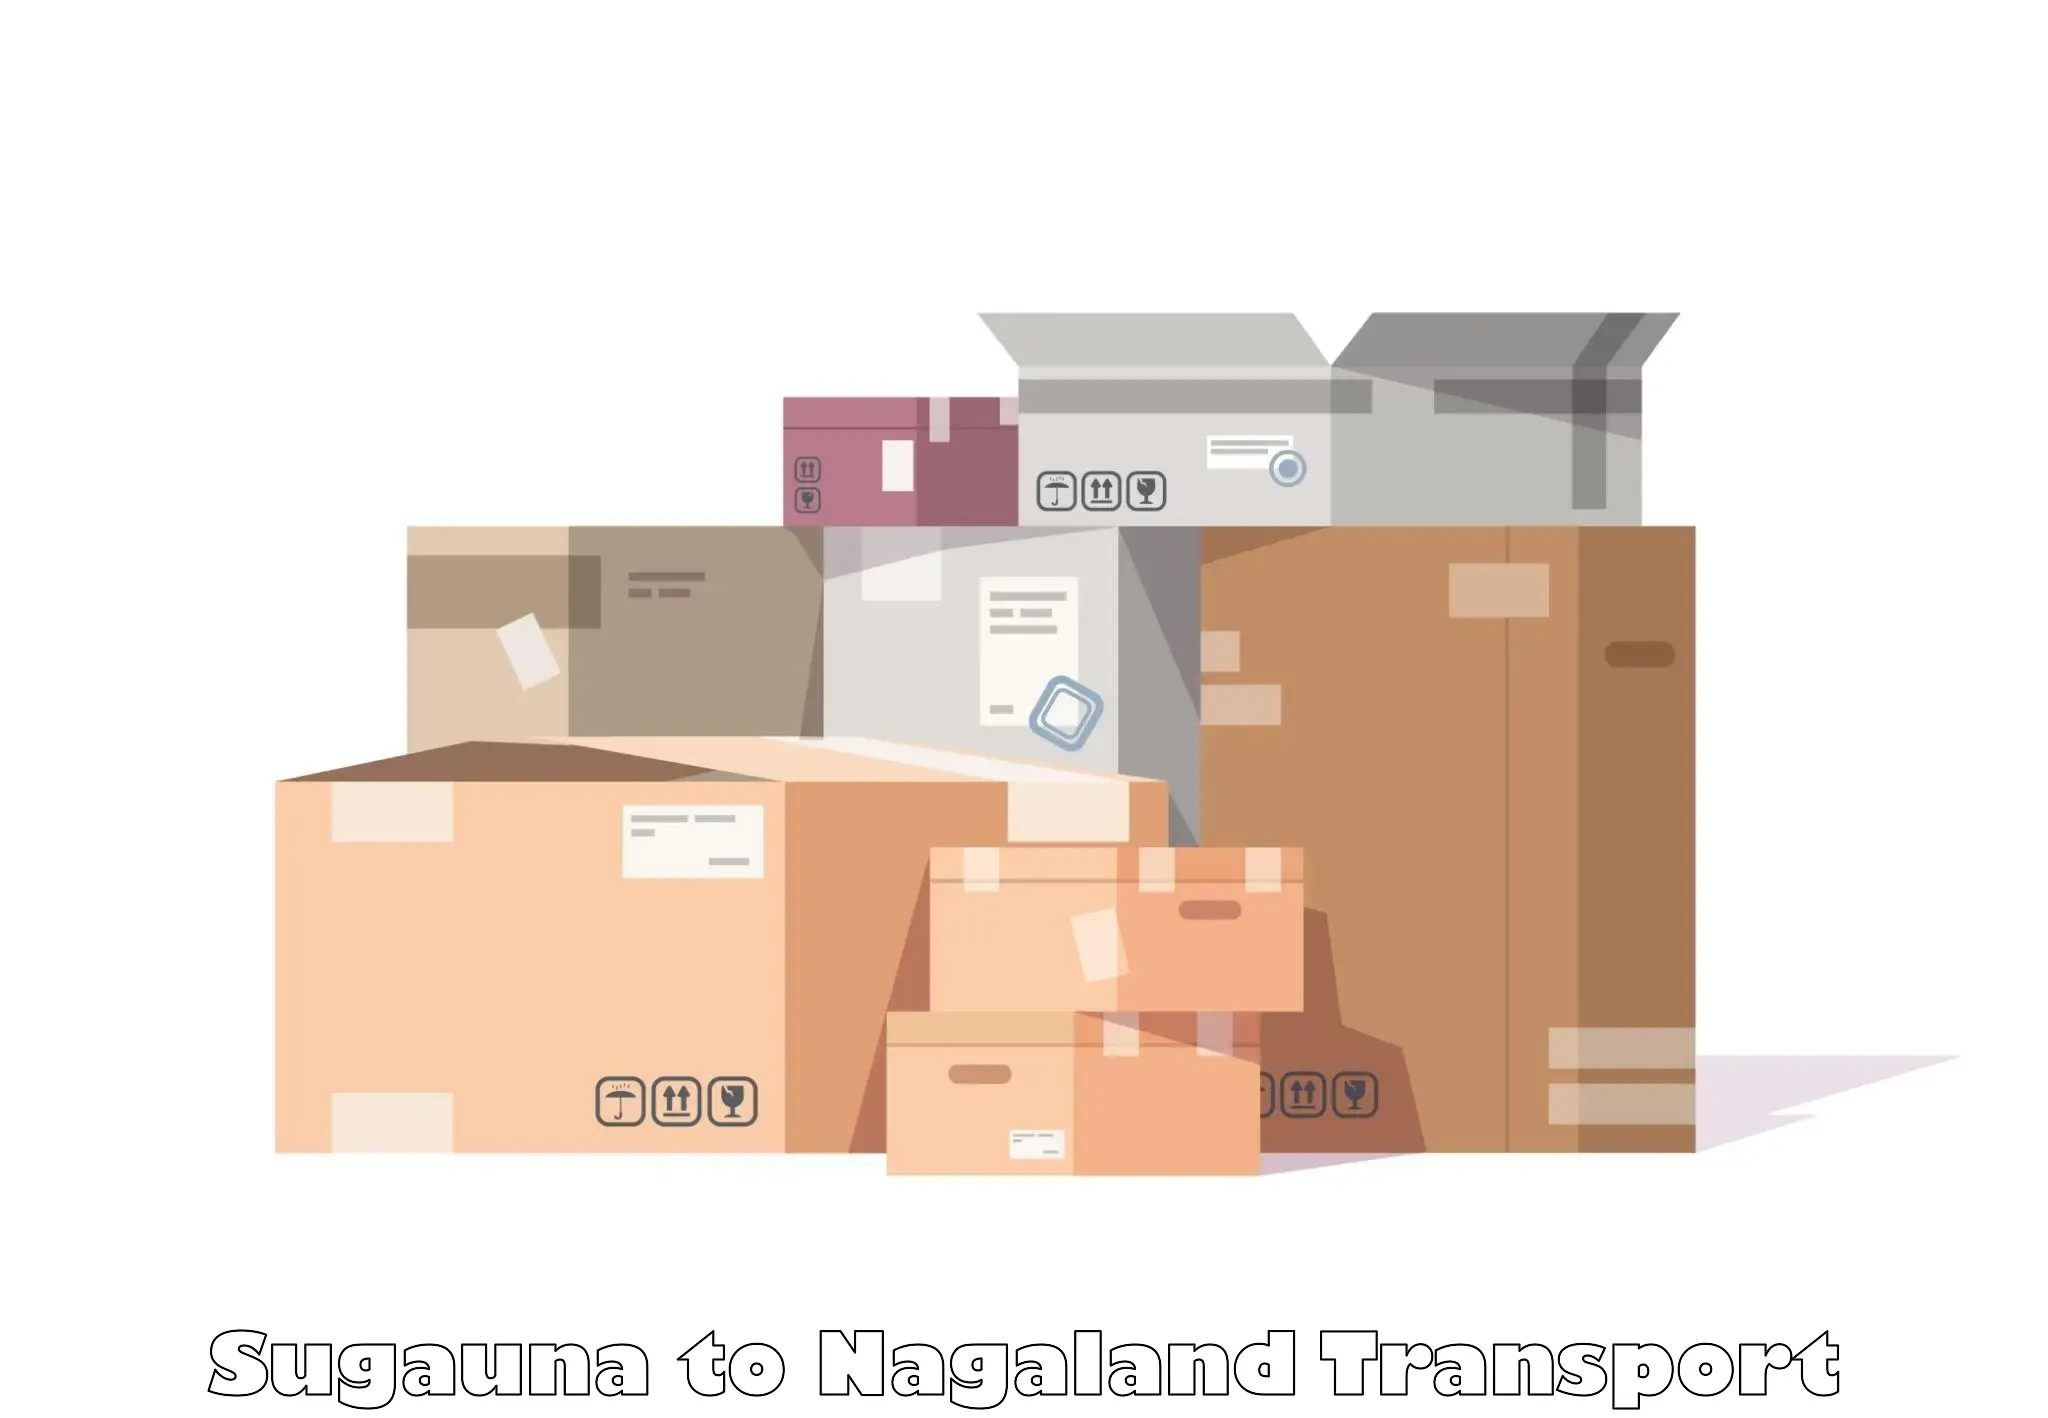 Vehicle parcel service Sugauna to Kiphire